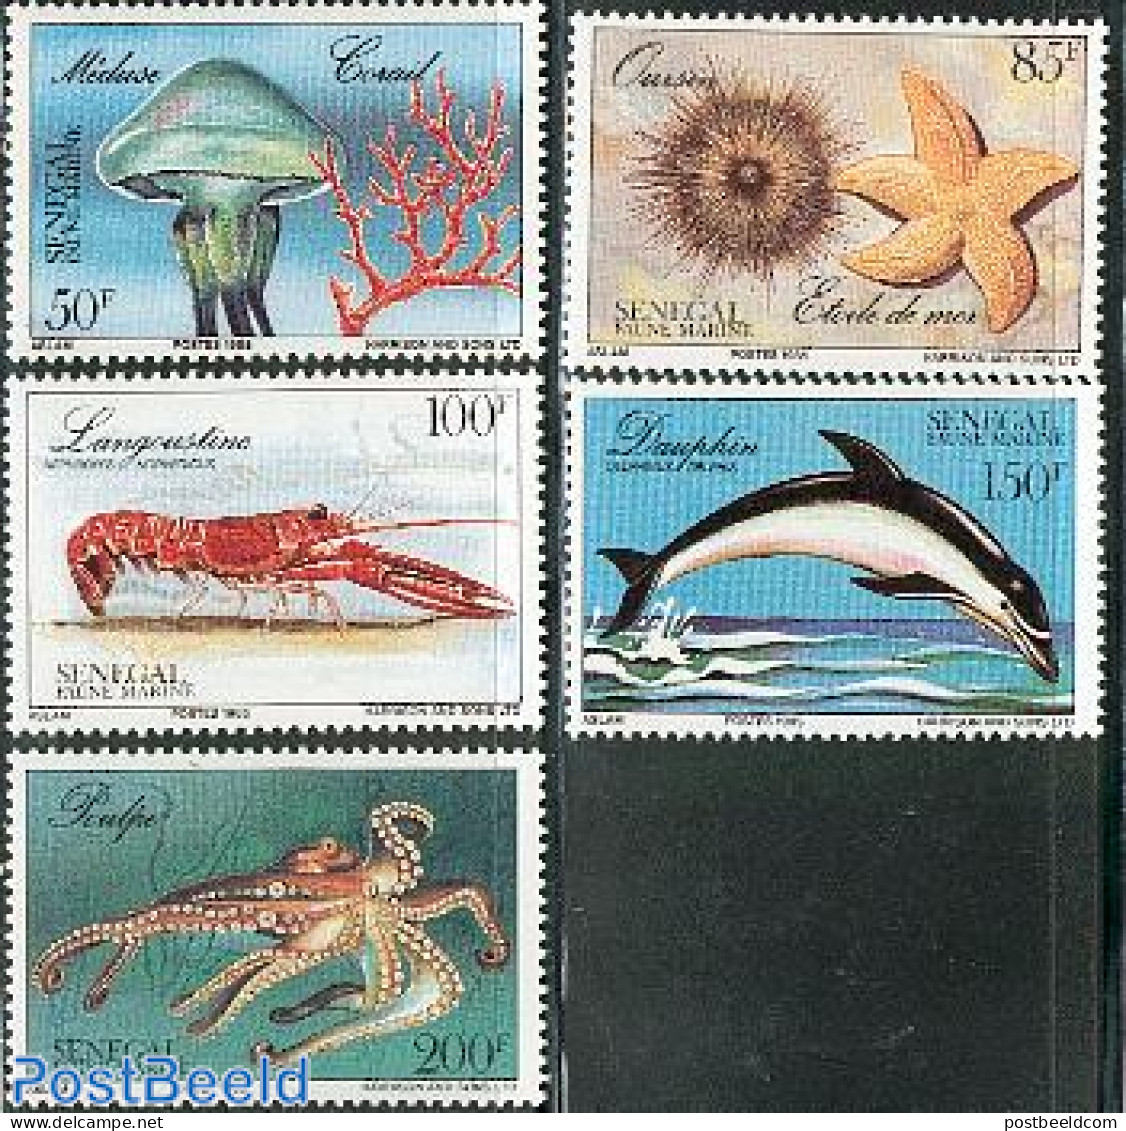 Senegal 1987 Marine Life 5v, Mint NH, Nature - Sea Mammals - Shells & Crustaceans - Crabs And Lobsters - Marine Life